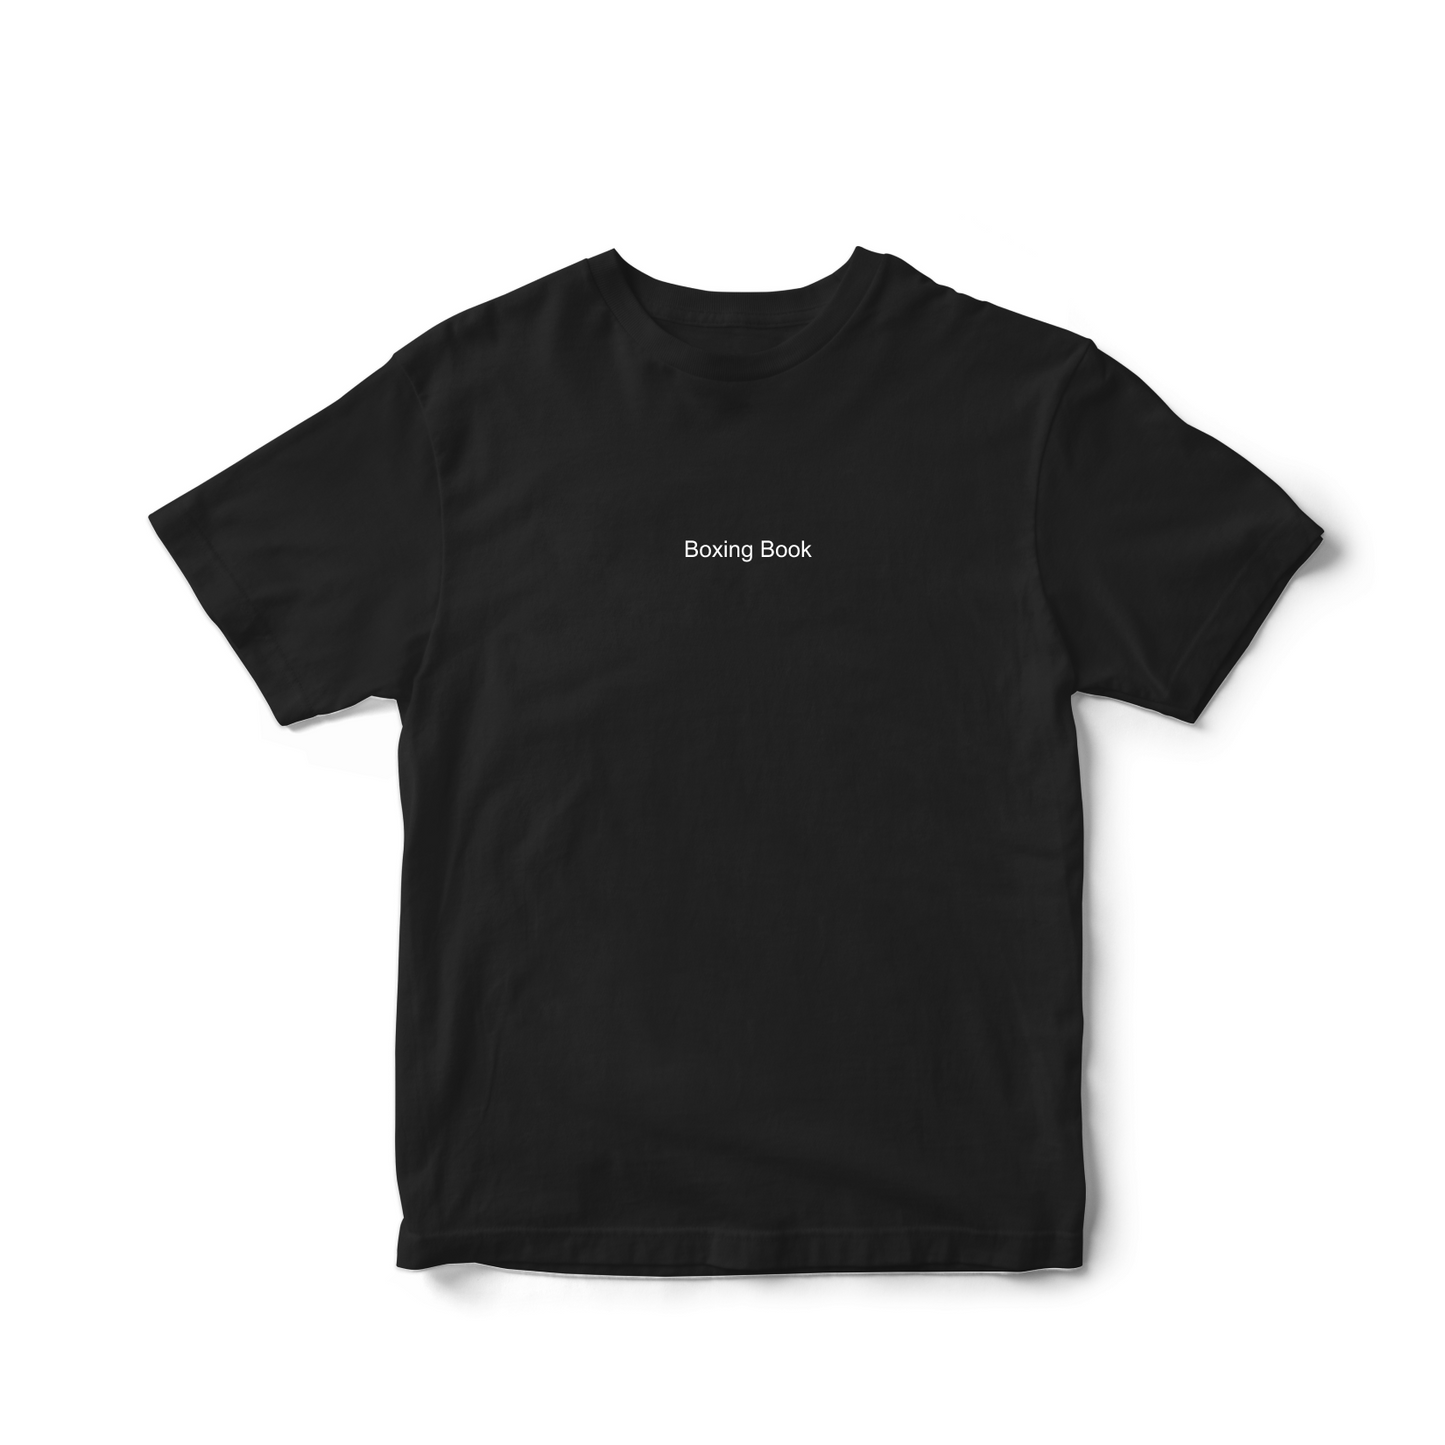 T-shirt - Black